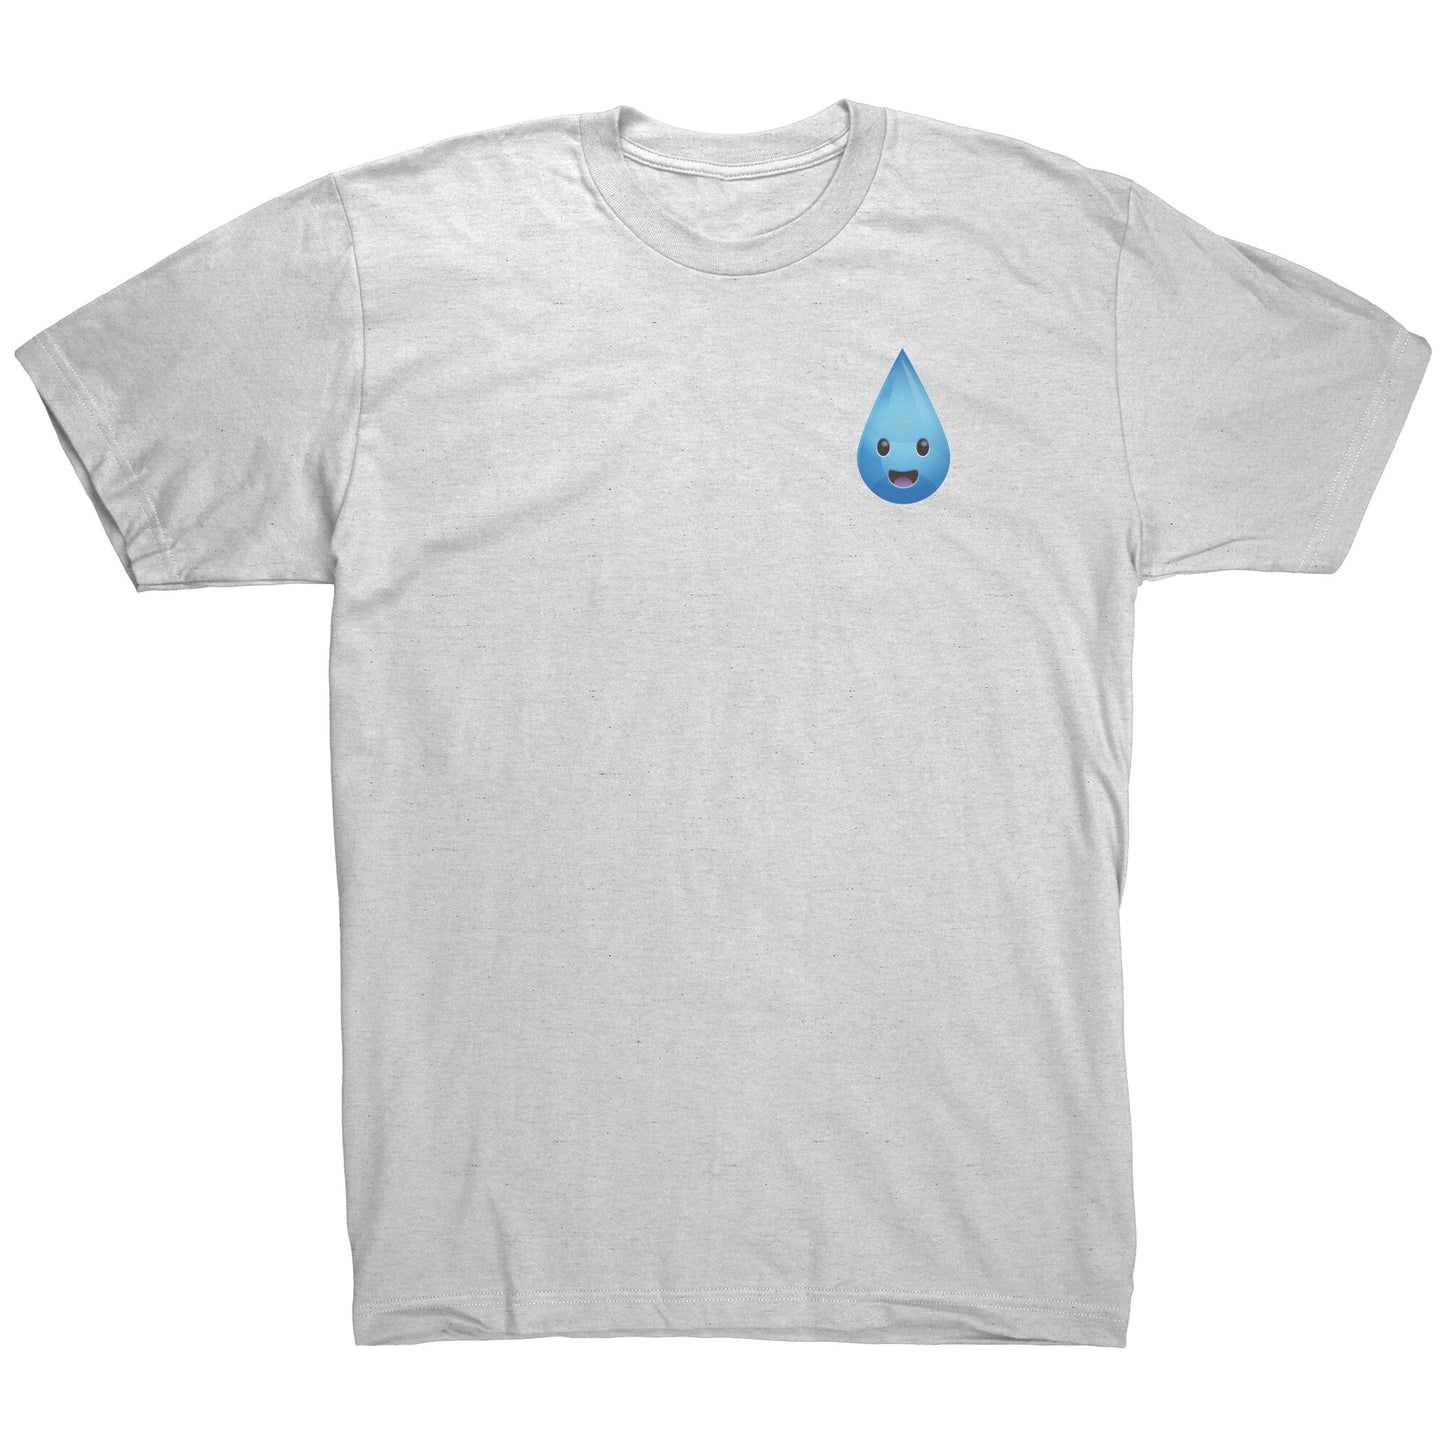 RainDrain Seamless Gutters T-Shirt